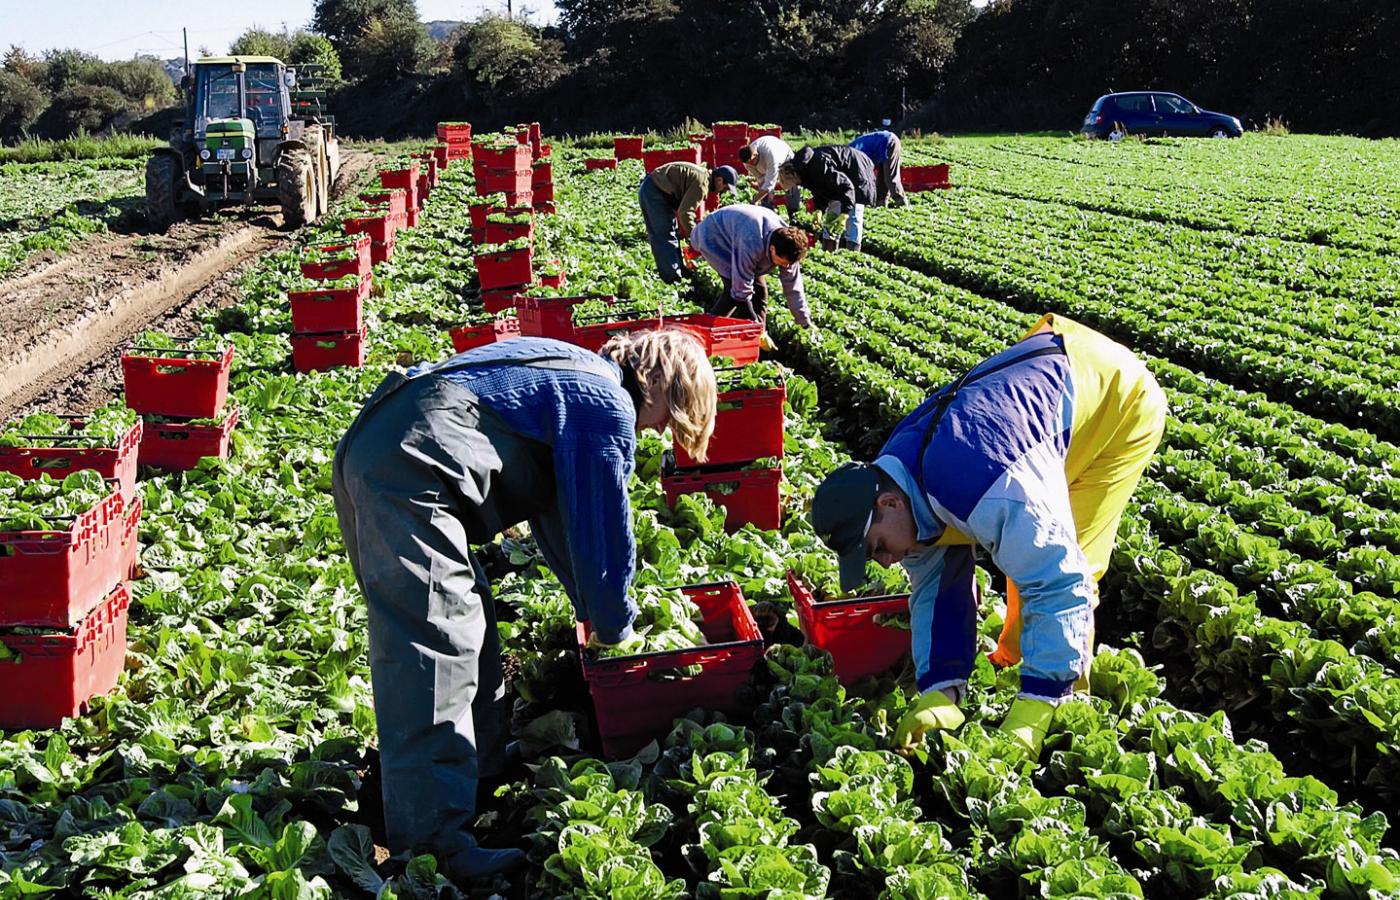 Polscy robotnicy sezonowi pracujący na uprawie sałaty w Nadrenii - Westfalii.